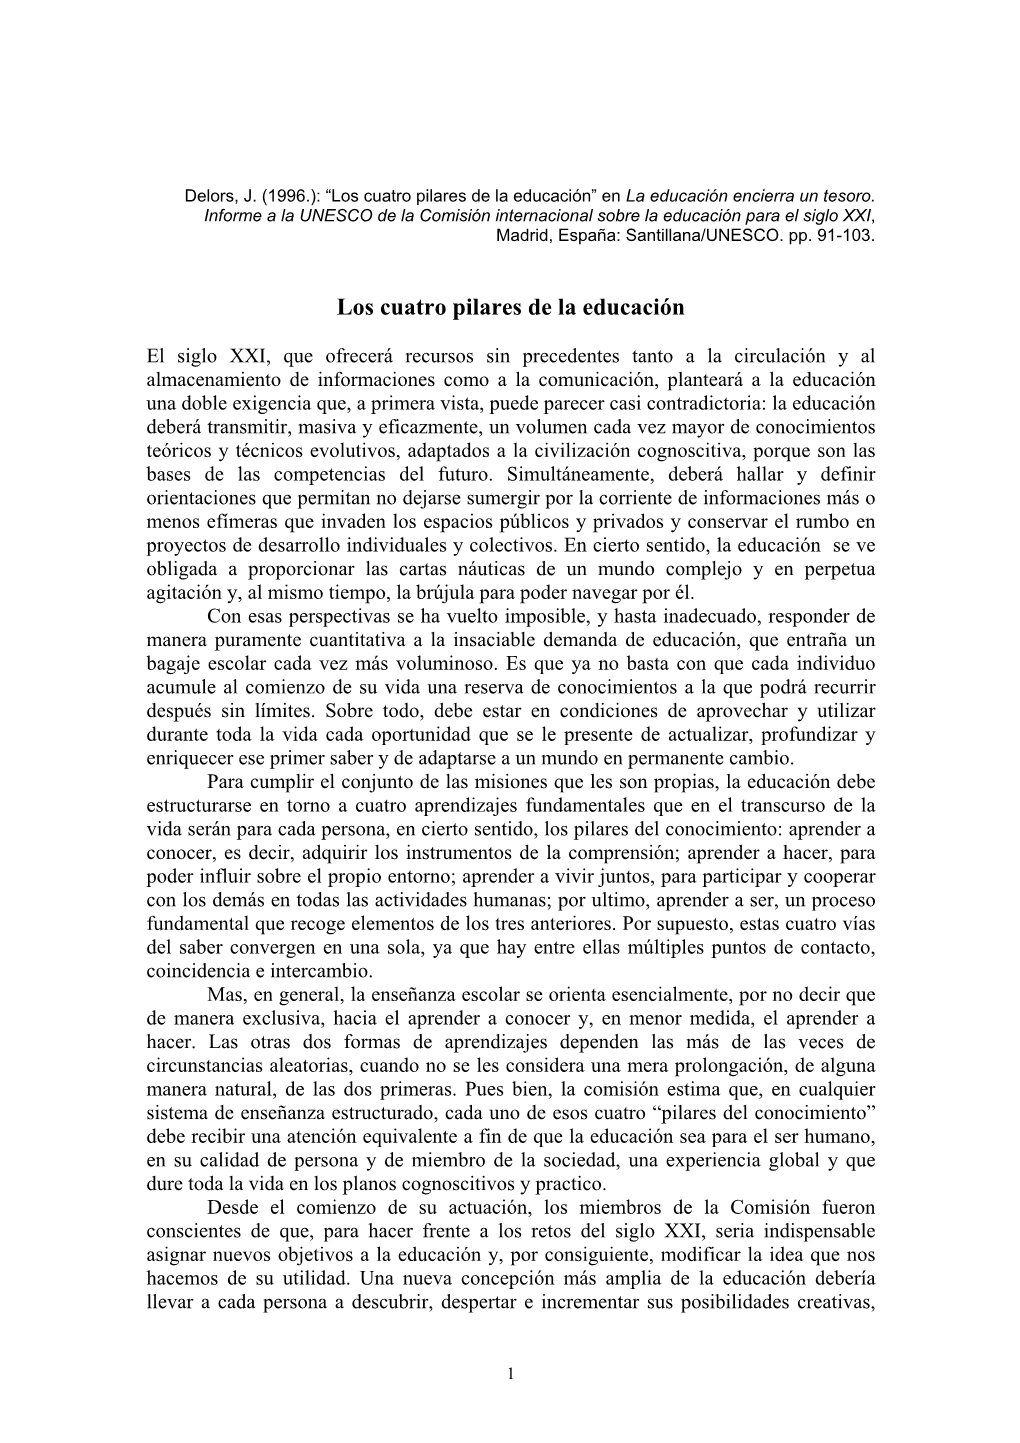 Delors, Jaques (1994): “Los Cuatro Pilares De La Educación”